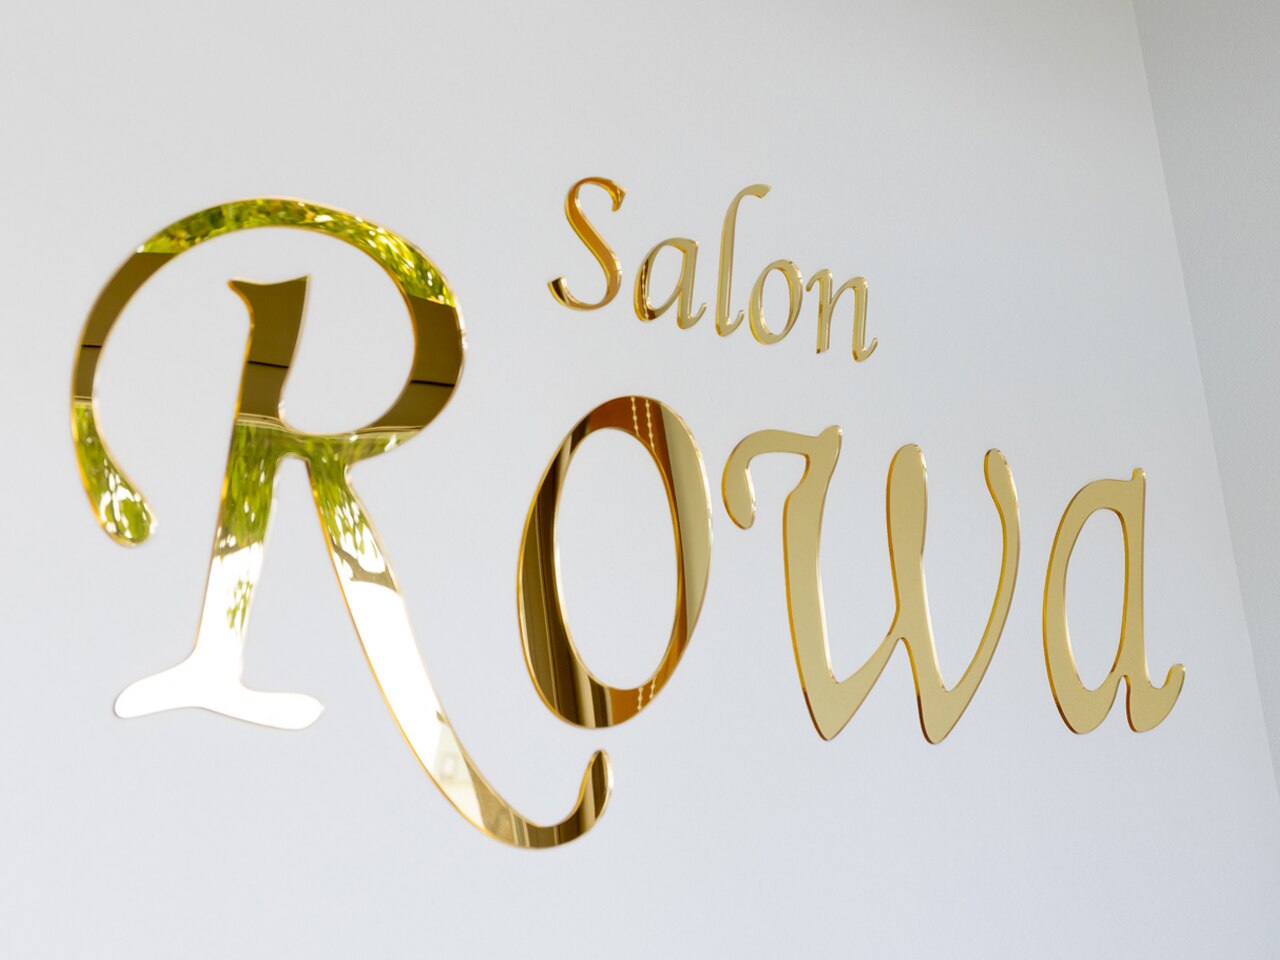 サロン ロワ(Salon Rowa)の紹介画像